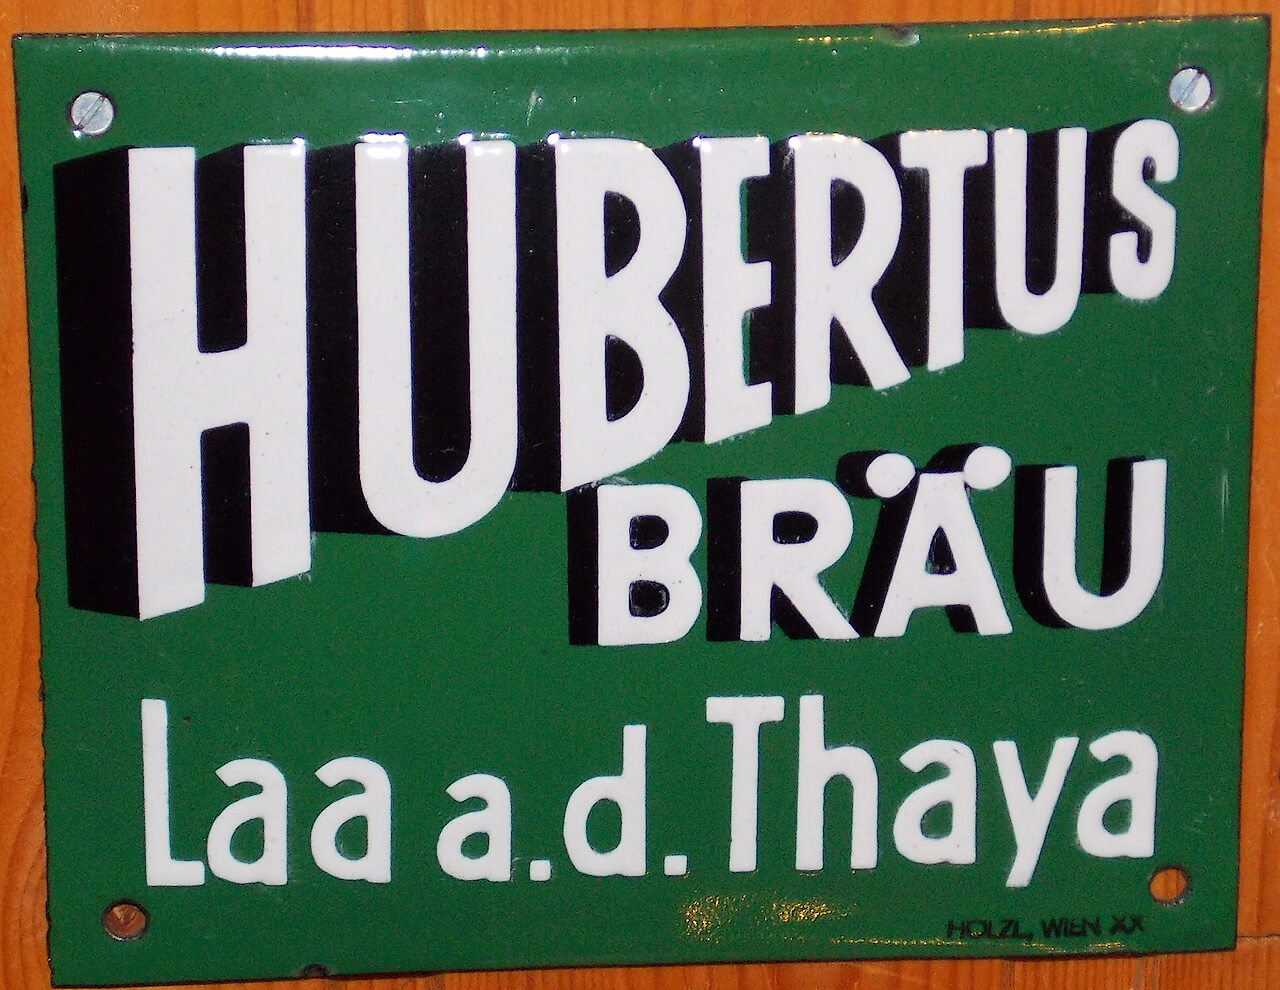 Hubertus Bräu